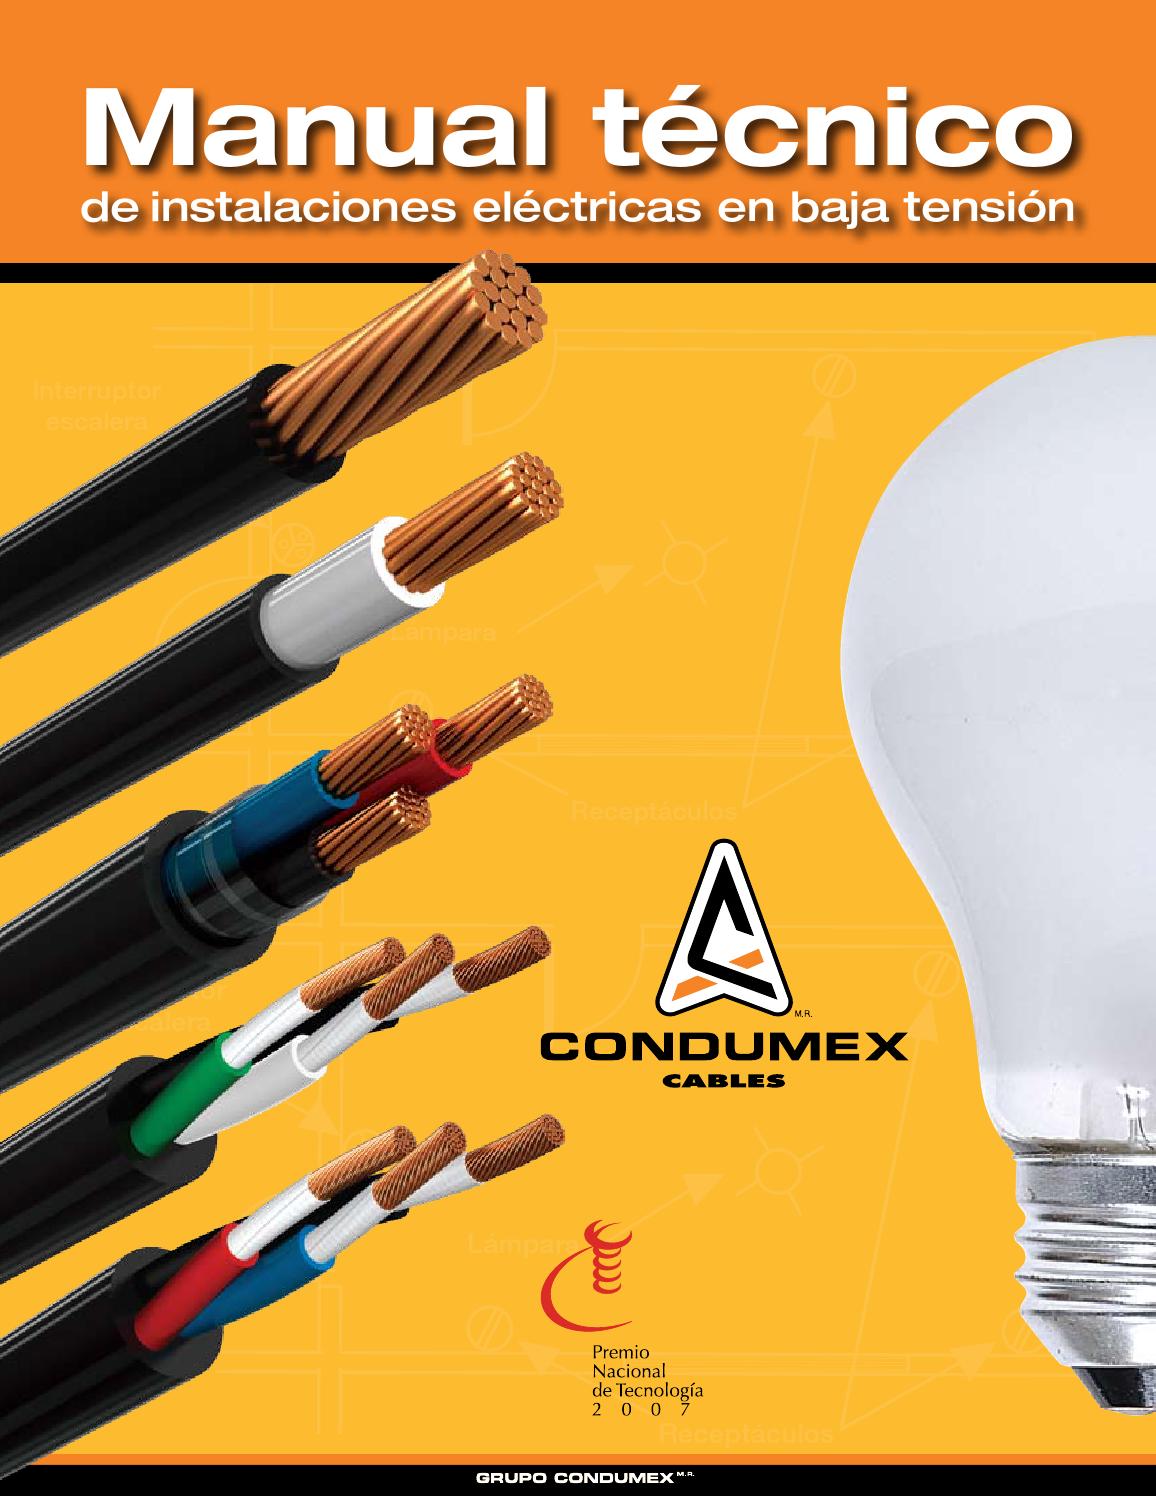 Manual Técnico de Instalaciones Eléctricas en Baja Tensión 1 Edición CONDUMEX PDF